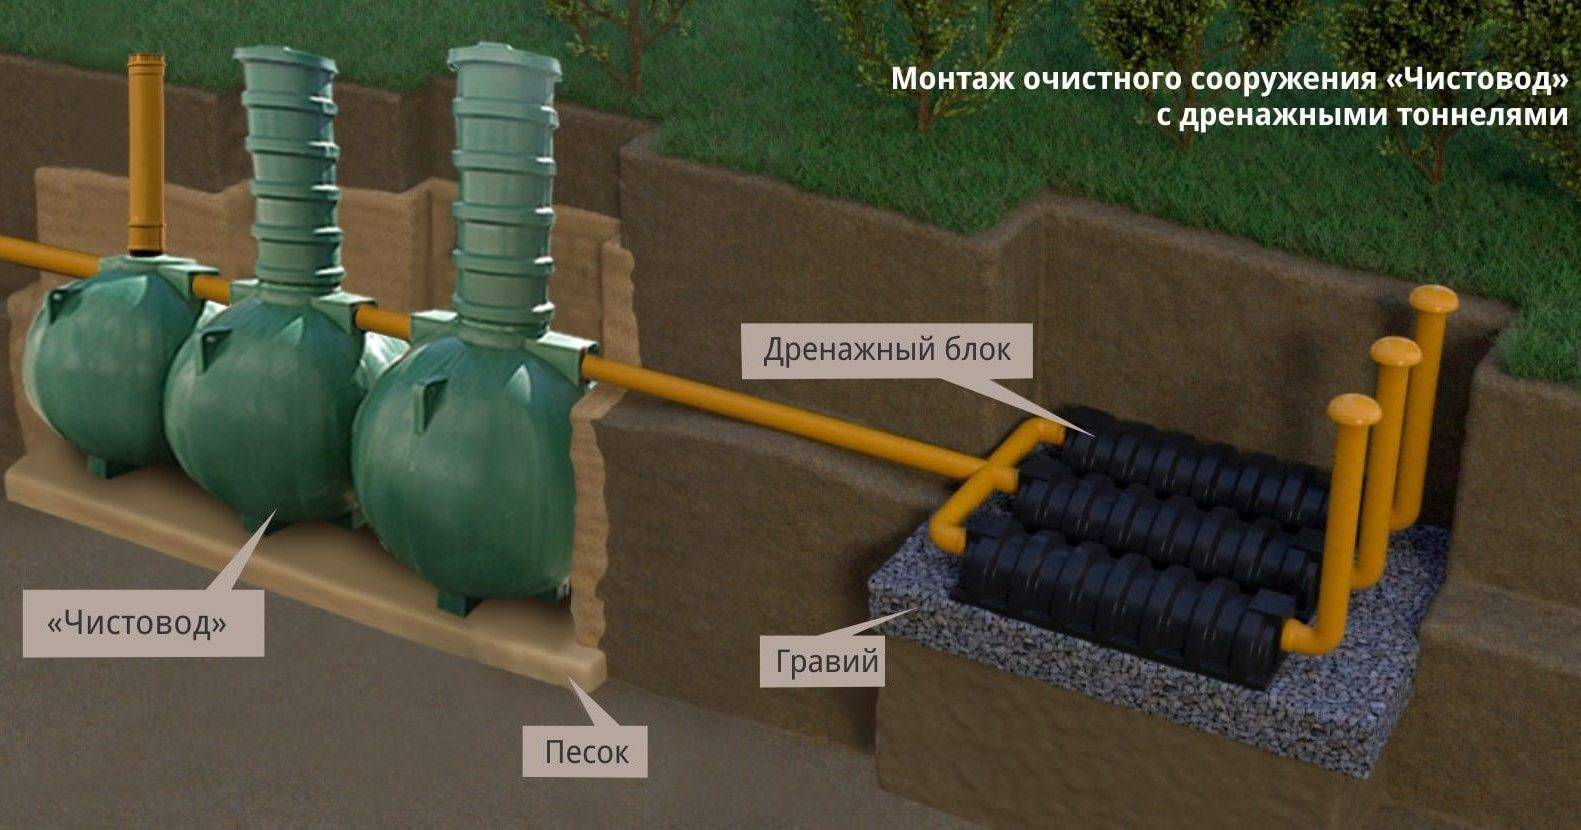 Завод чистовод, минск  это чистовод-3-шар — это септик автономной канализации «под ключ» в частном доме и на даче в минске и по беларуси, это канализация с гарантией, доставкой и рассрочкой